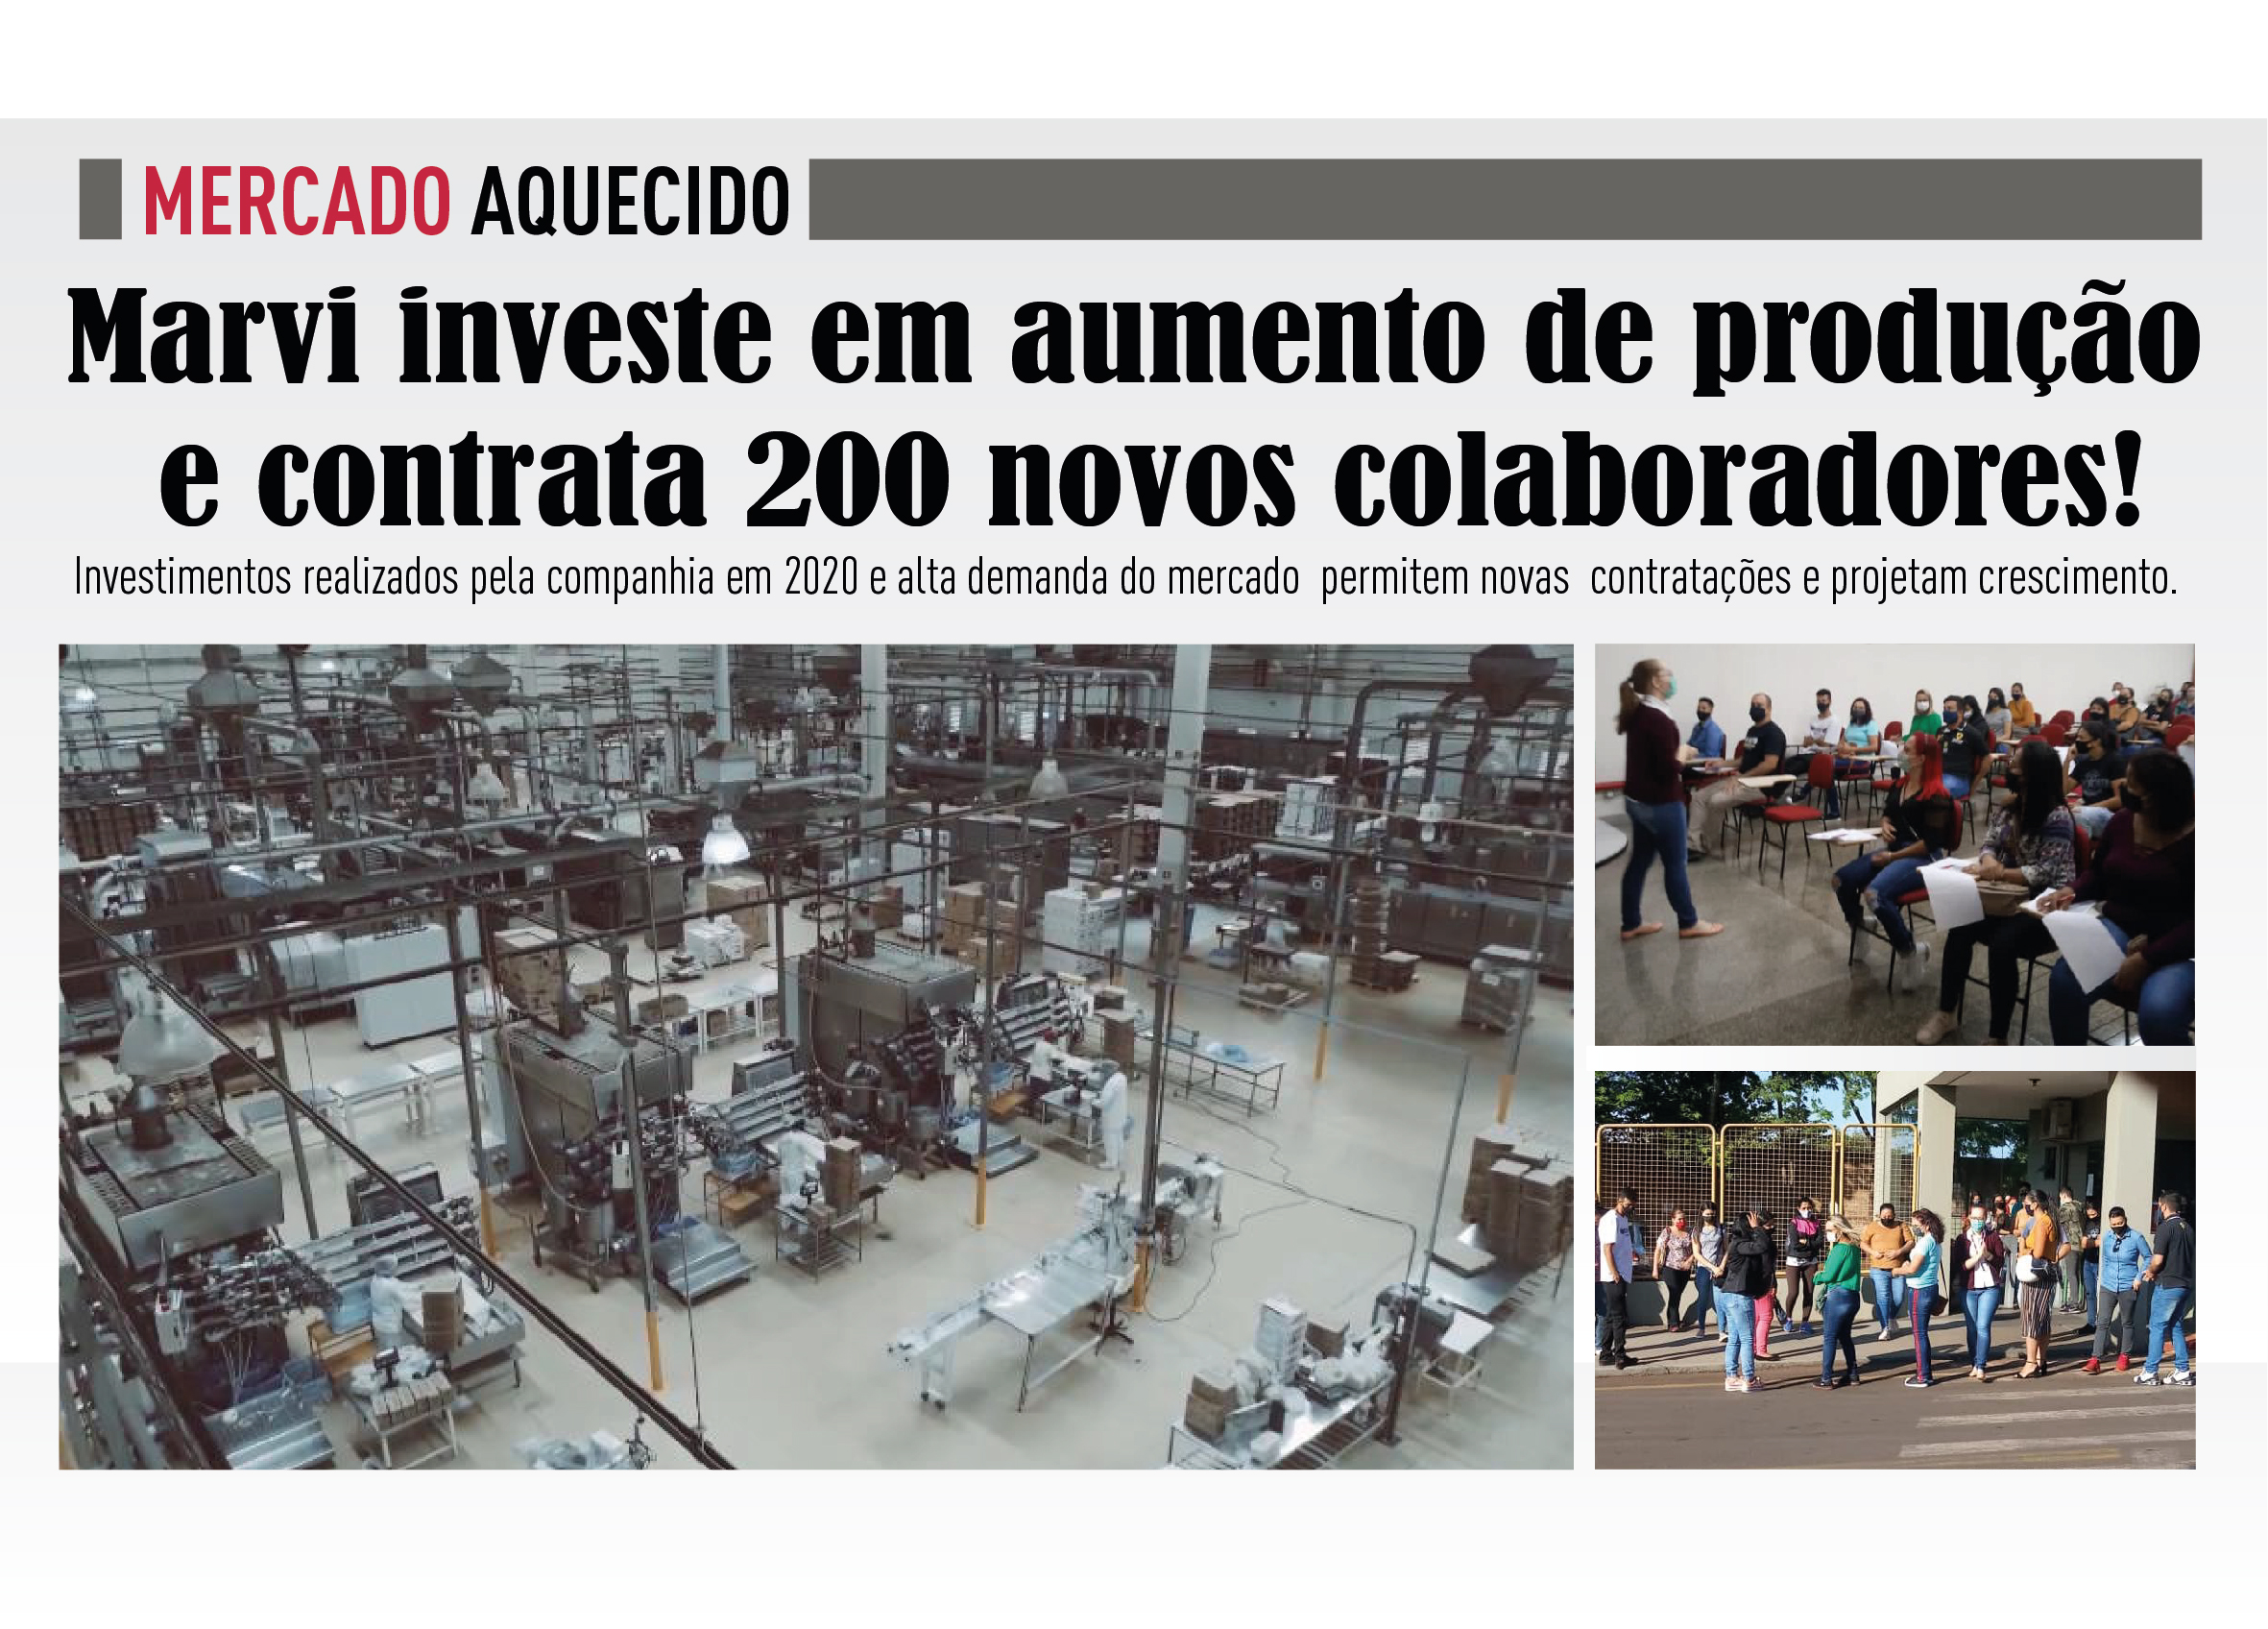 Mercado aquecido: Marvi investe em aumento de produo e contrata 200 novos colaboradores!